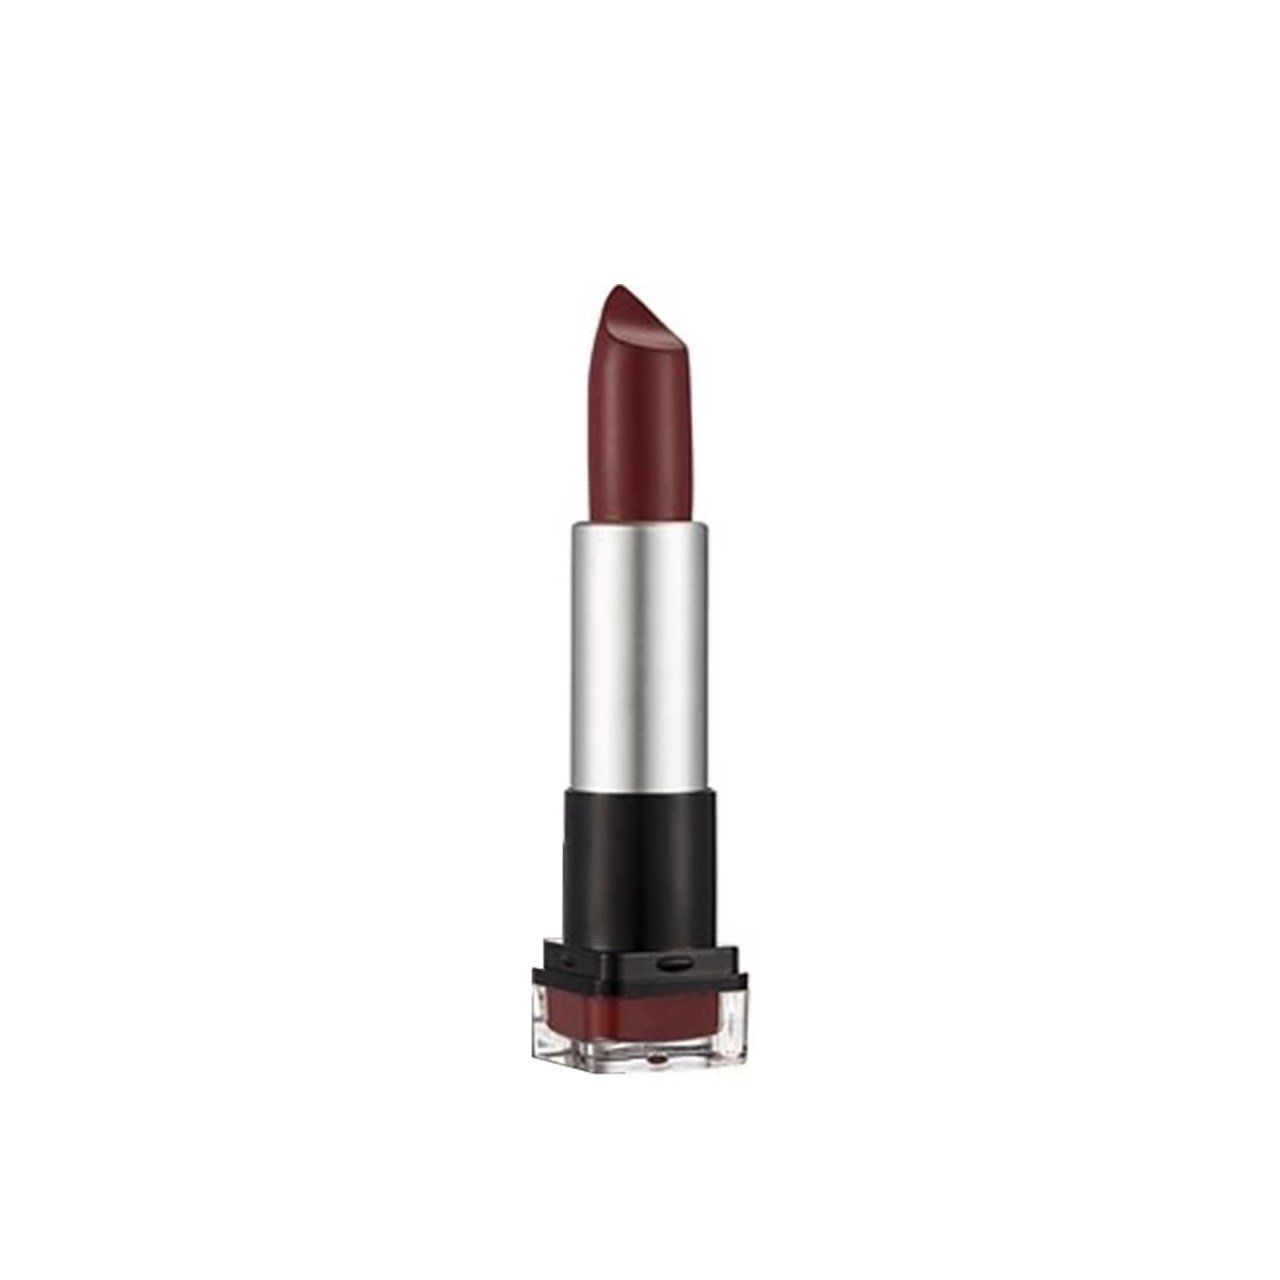 Flormar HD Weightless Matte Lipstick 14 Ruby Brown 4g